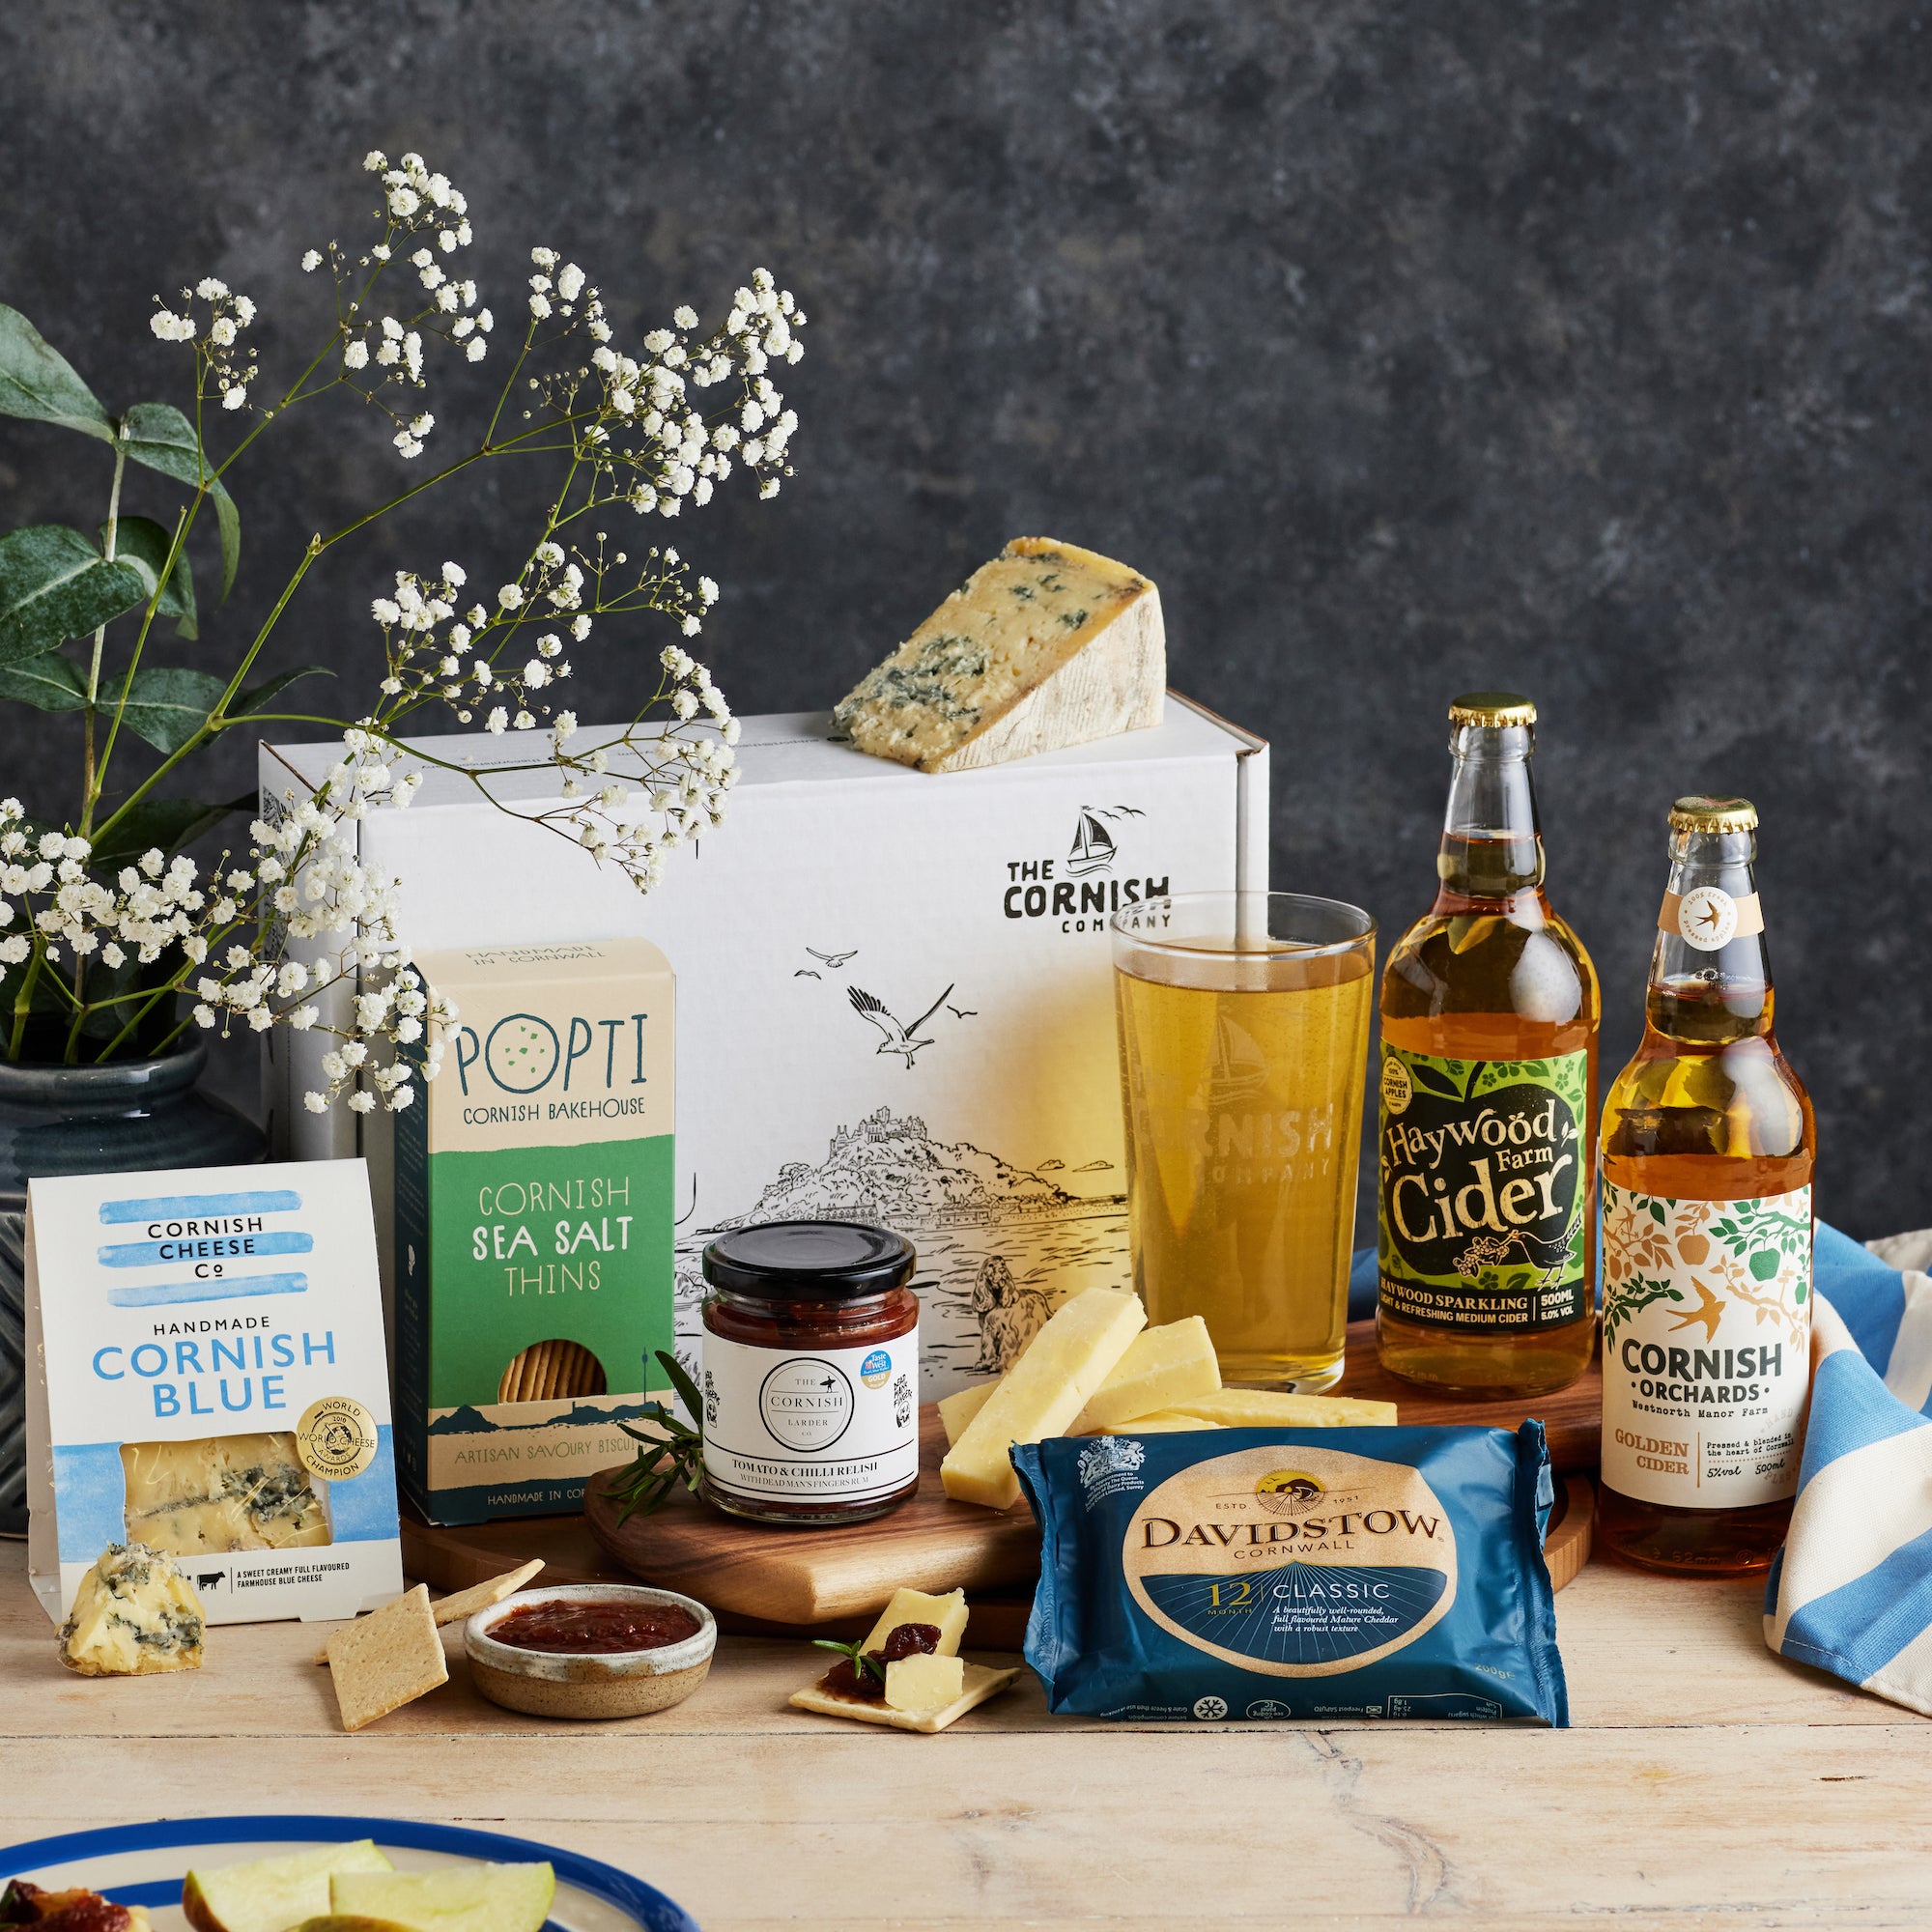 Cornish　Company　Cider　The　Hamper　–　Cornish　Cheese